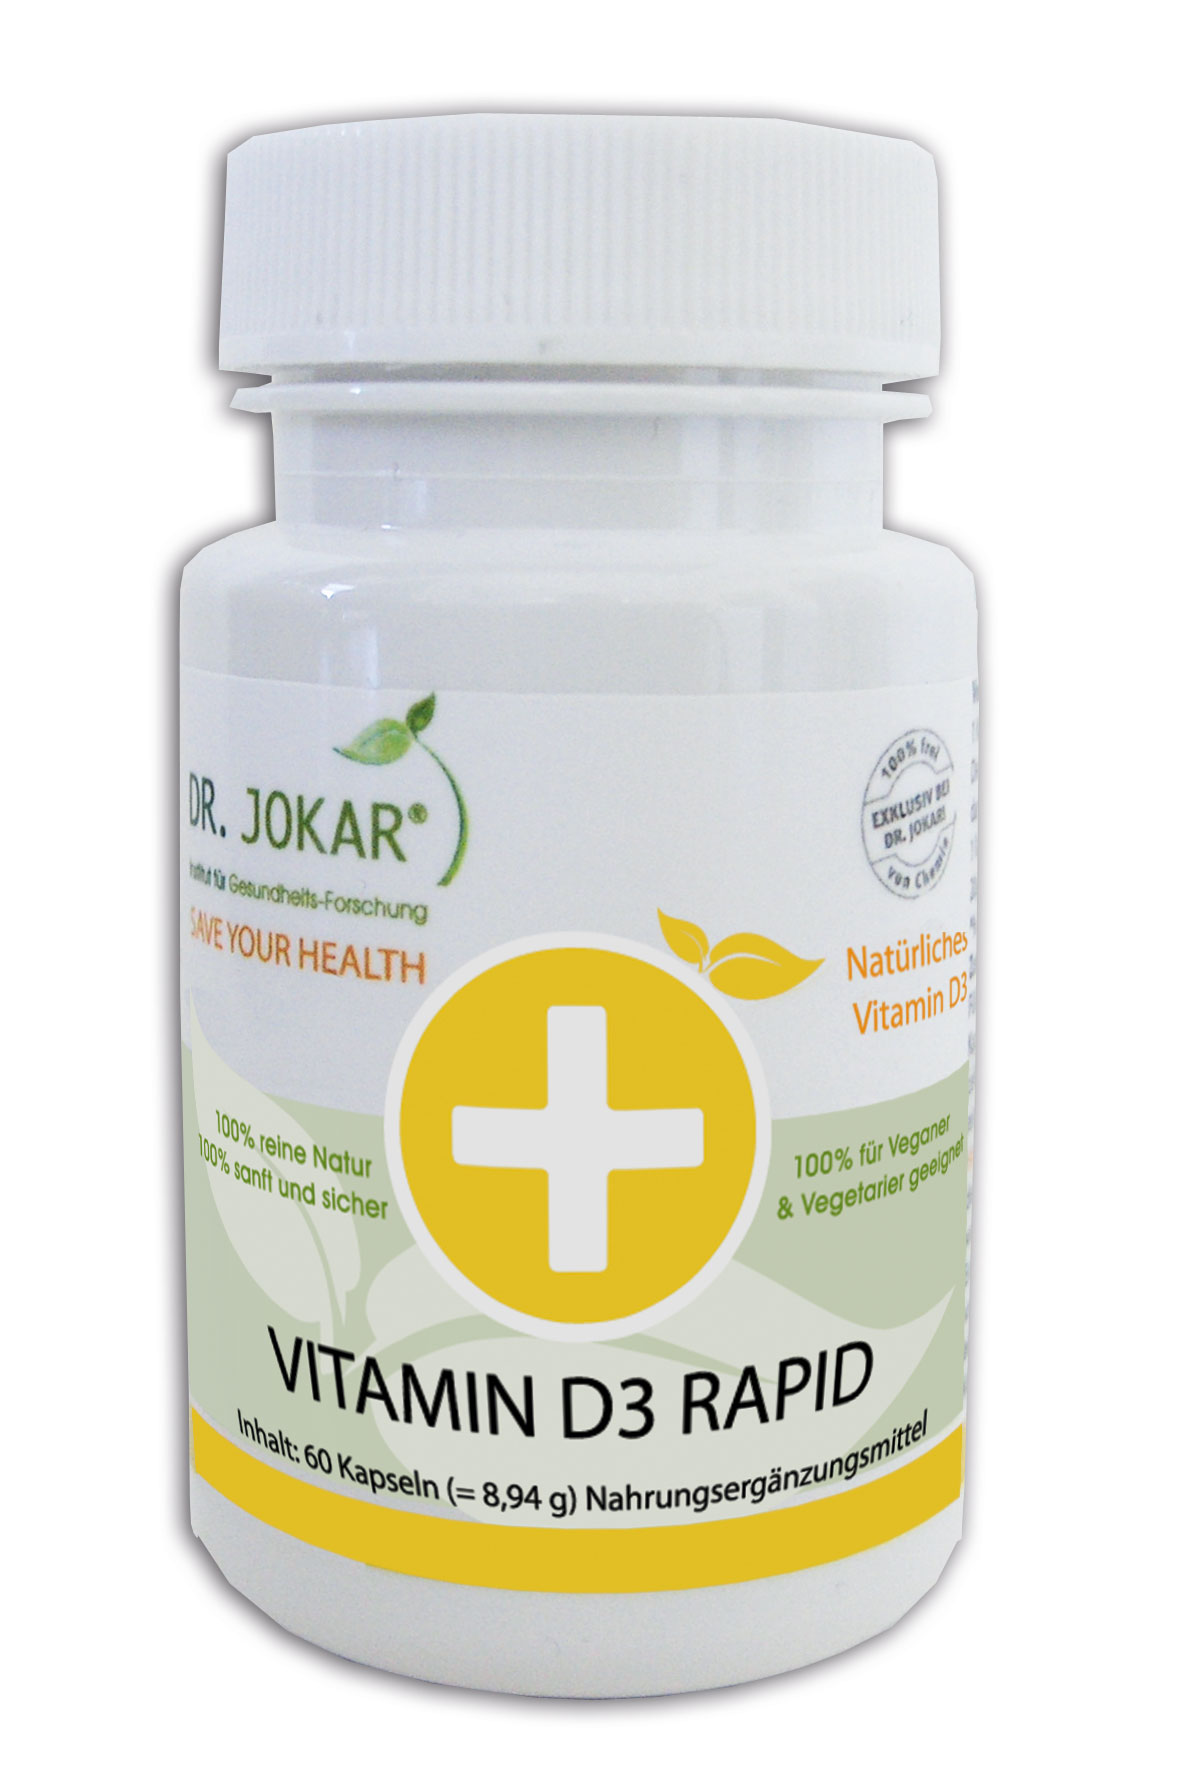 Vitamin D RAPID - Gelenke, Knochen, Herz und Zähne..